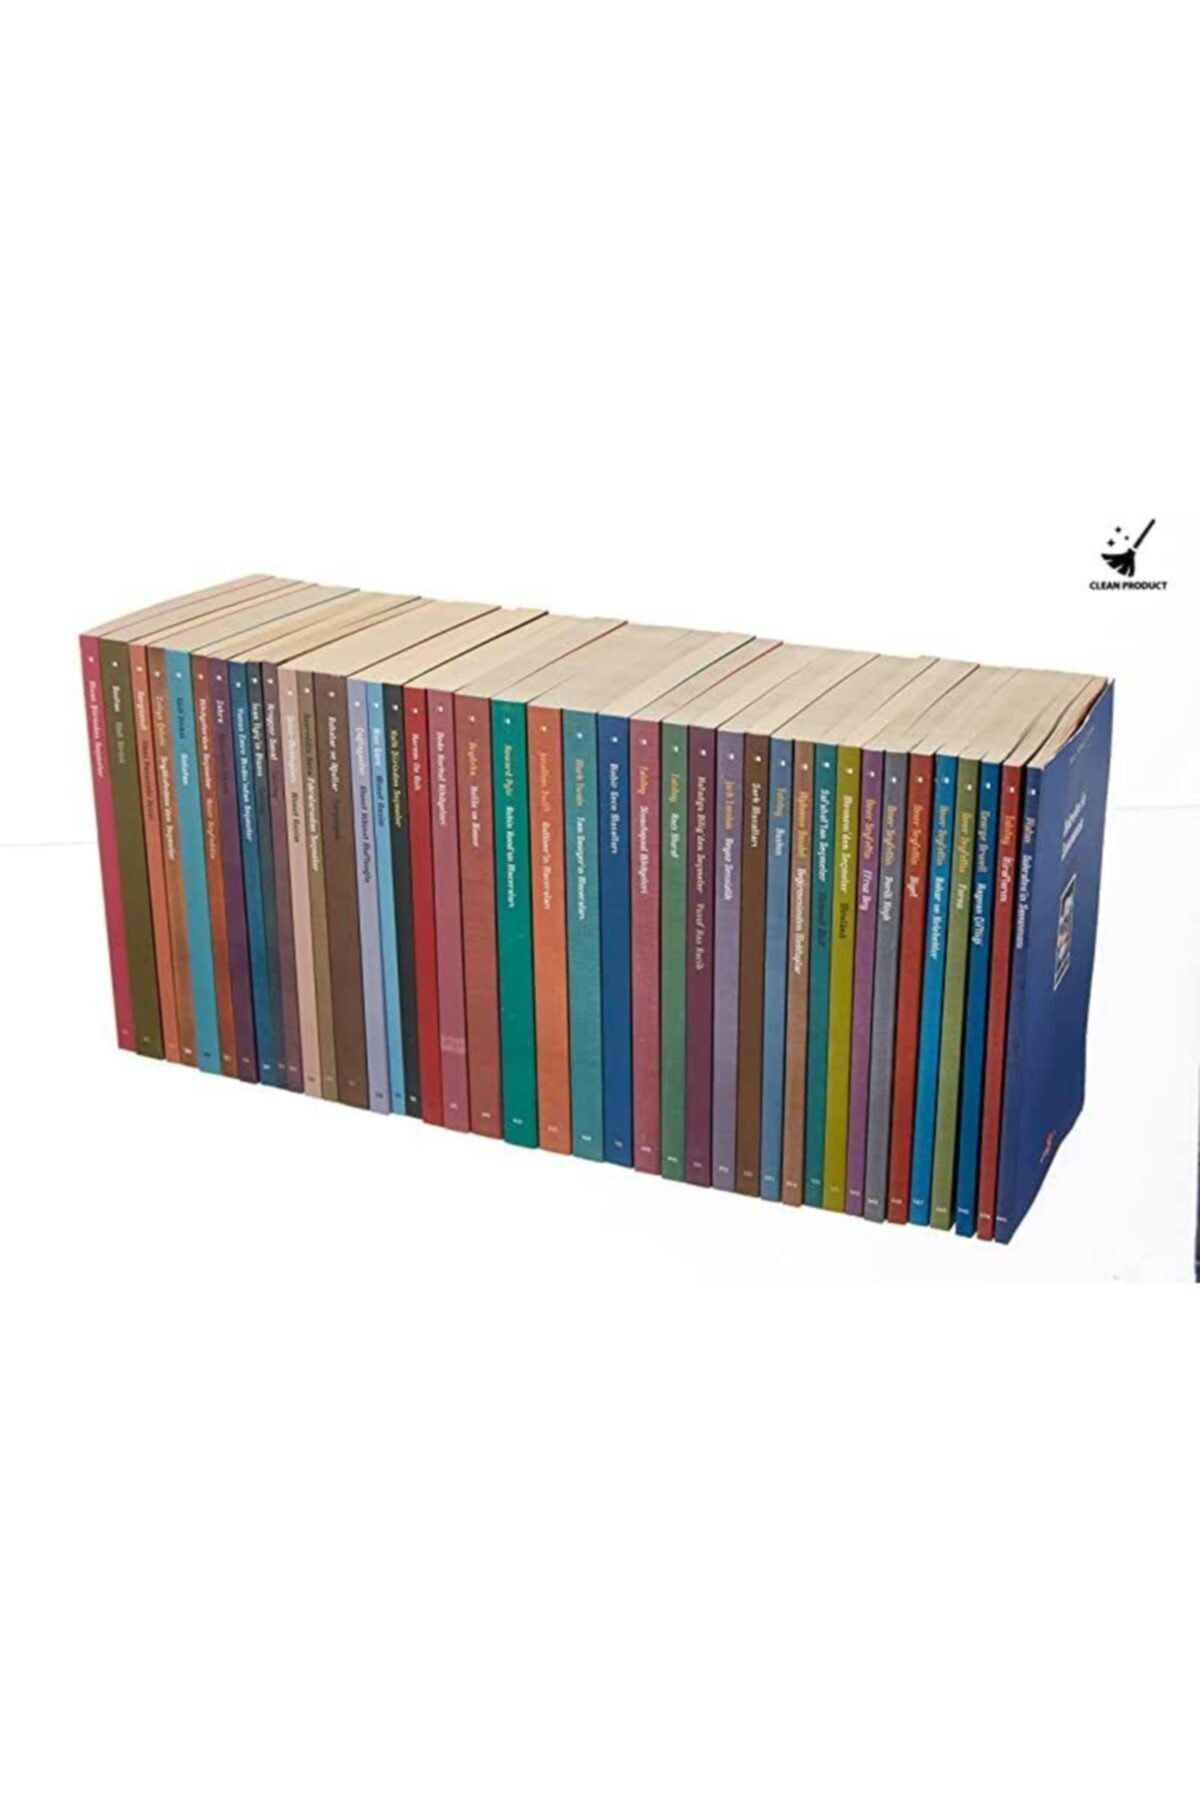 Beyan Yayınları Lise 100 Temel Eser (kutulu 40 Kitap Takım)